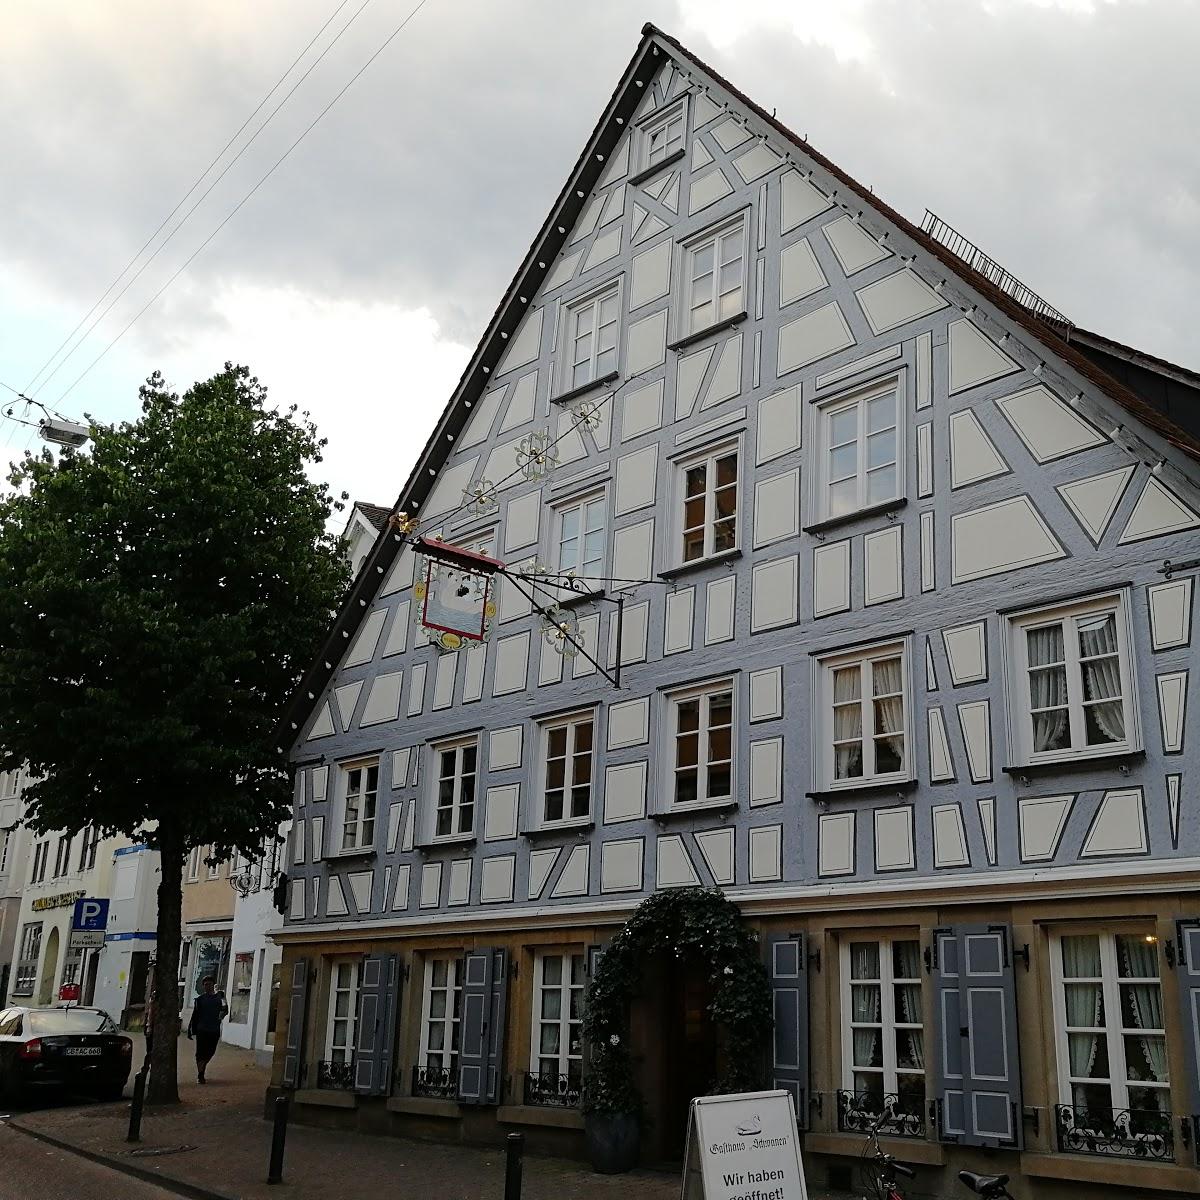 Restaurant "Gasthaus Schwanen" in Schwäbisch Gmünd